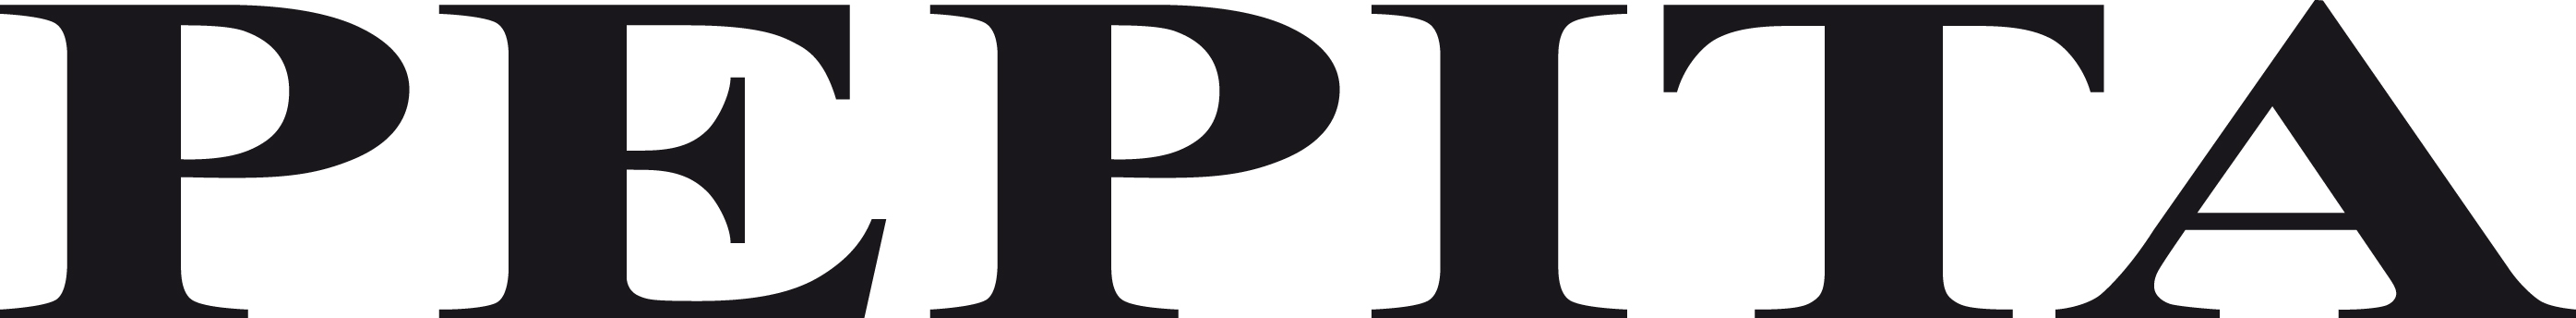 Pepita logo